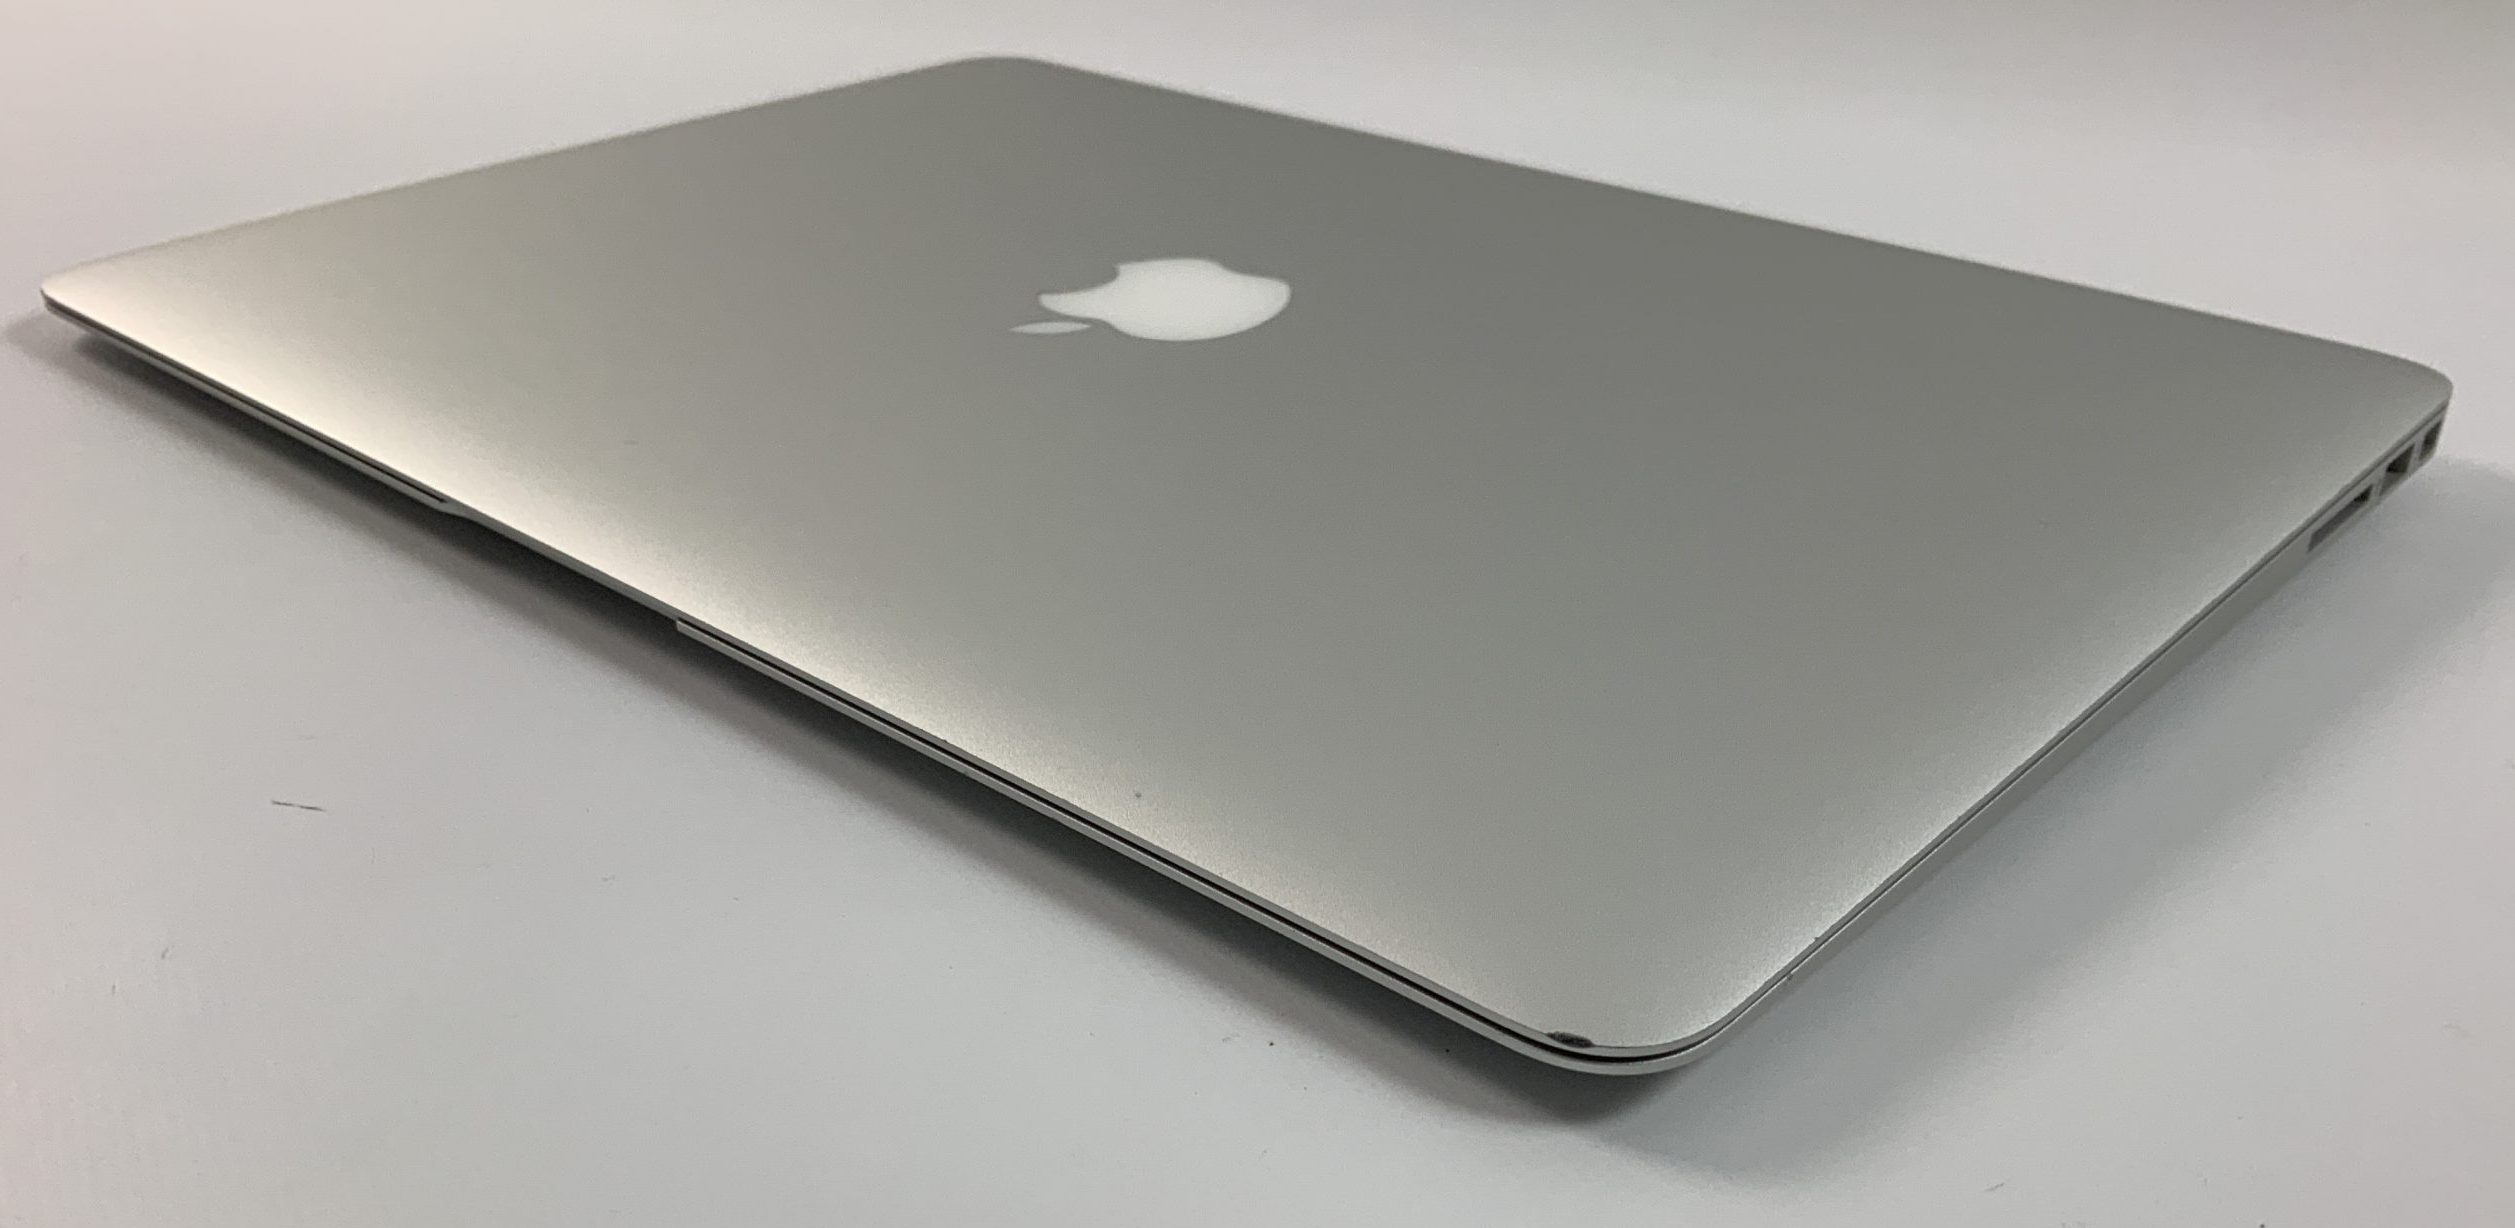 MacBook Air 13" Mid 2017 (Intel Core i5 1.8 GHz 8 GB RAM 256 GB SSD), Intel Core i5 1.8 GHz, 8 GB RAM, 256 GB SSD, image 5